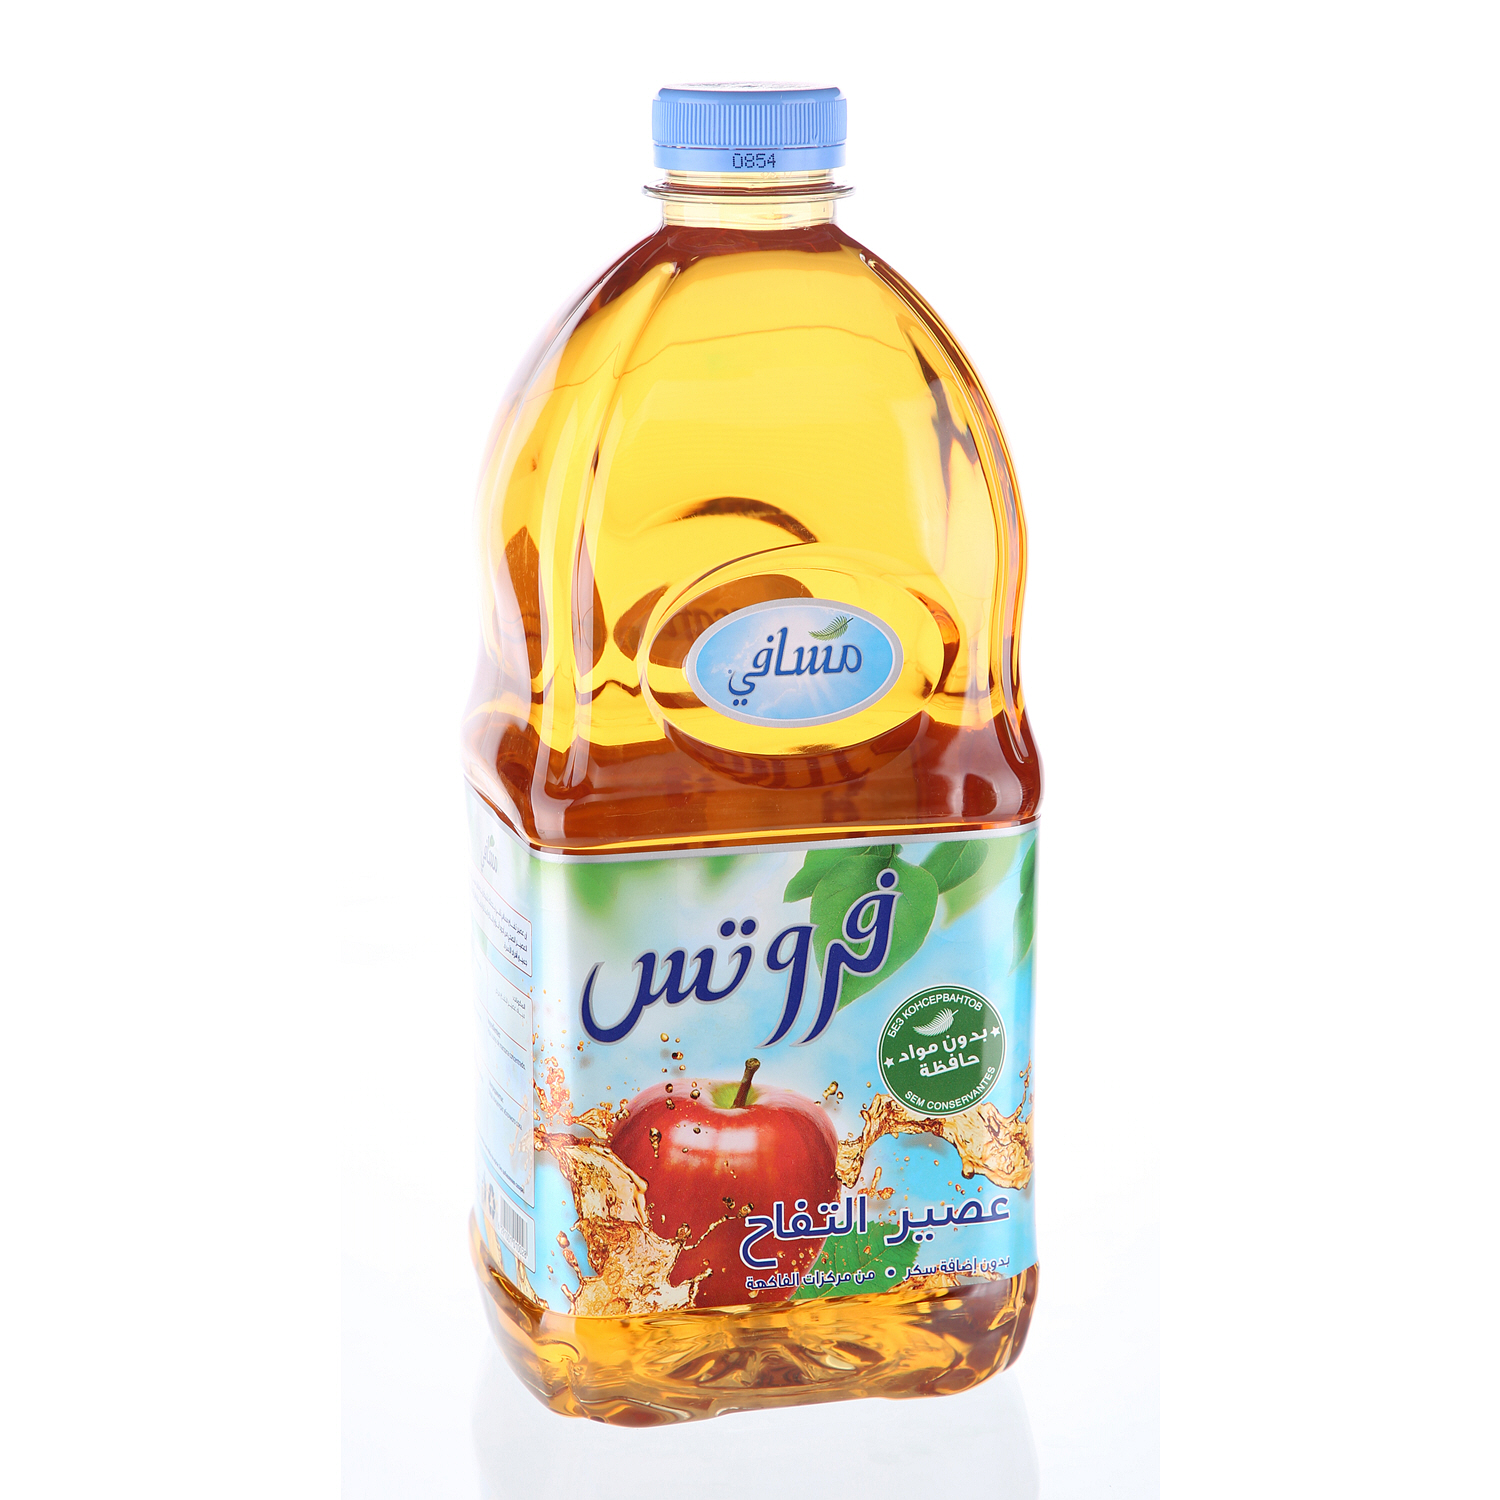 Masafi Fruit Juice Apple 2Ltr